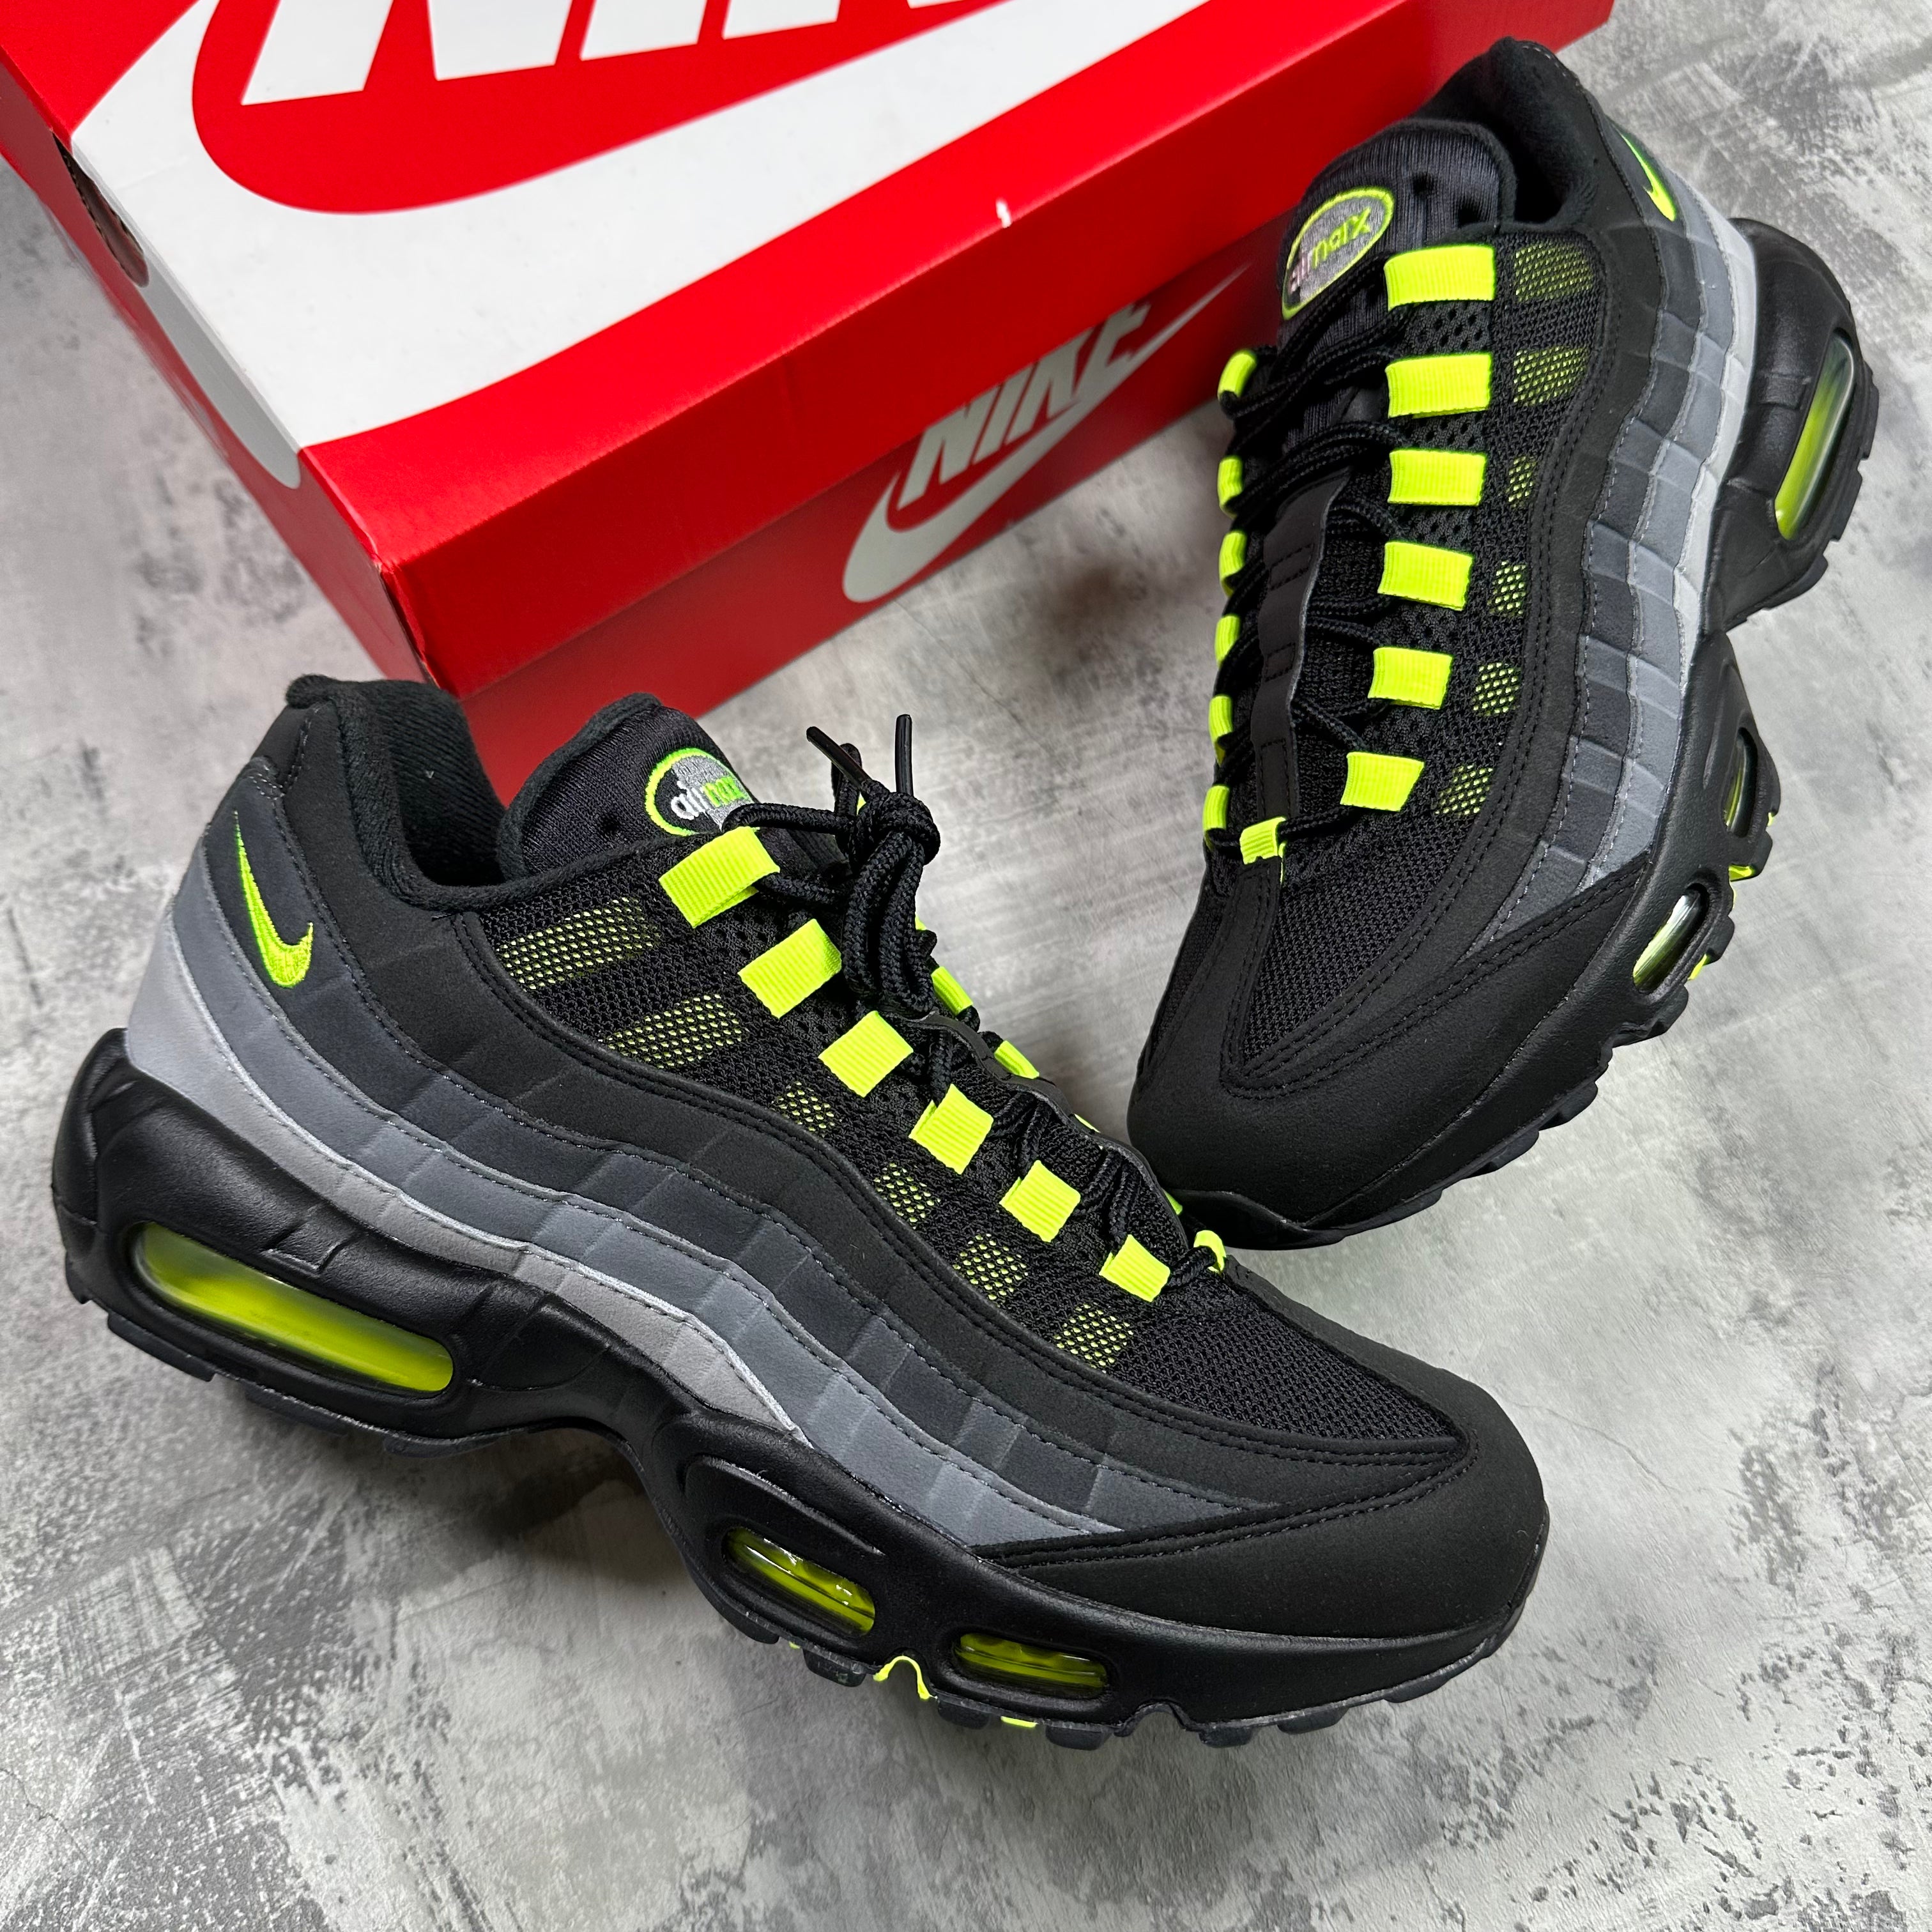 Nike Air Max 95 Black / Neon